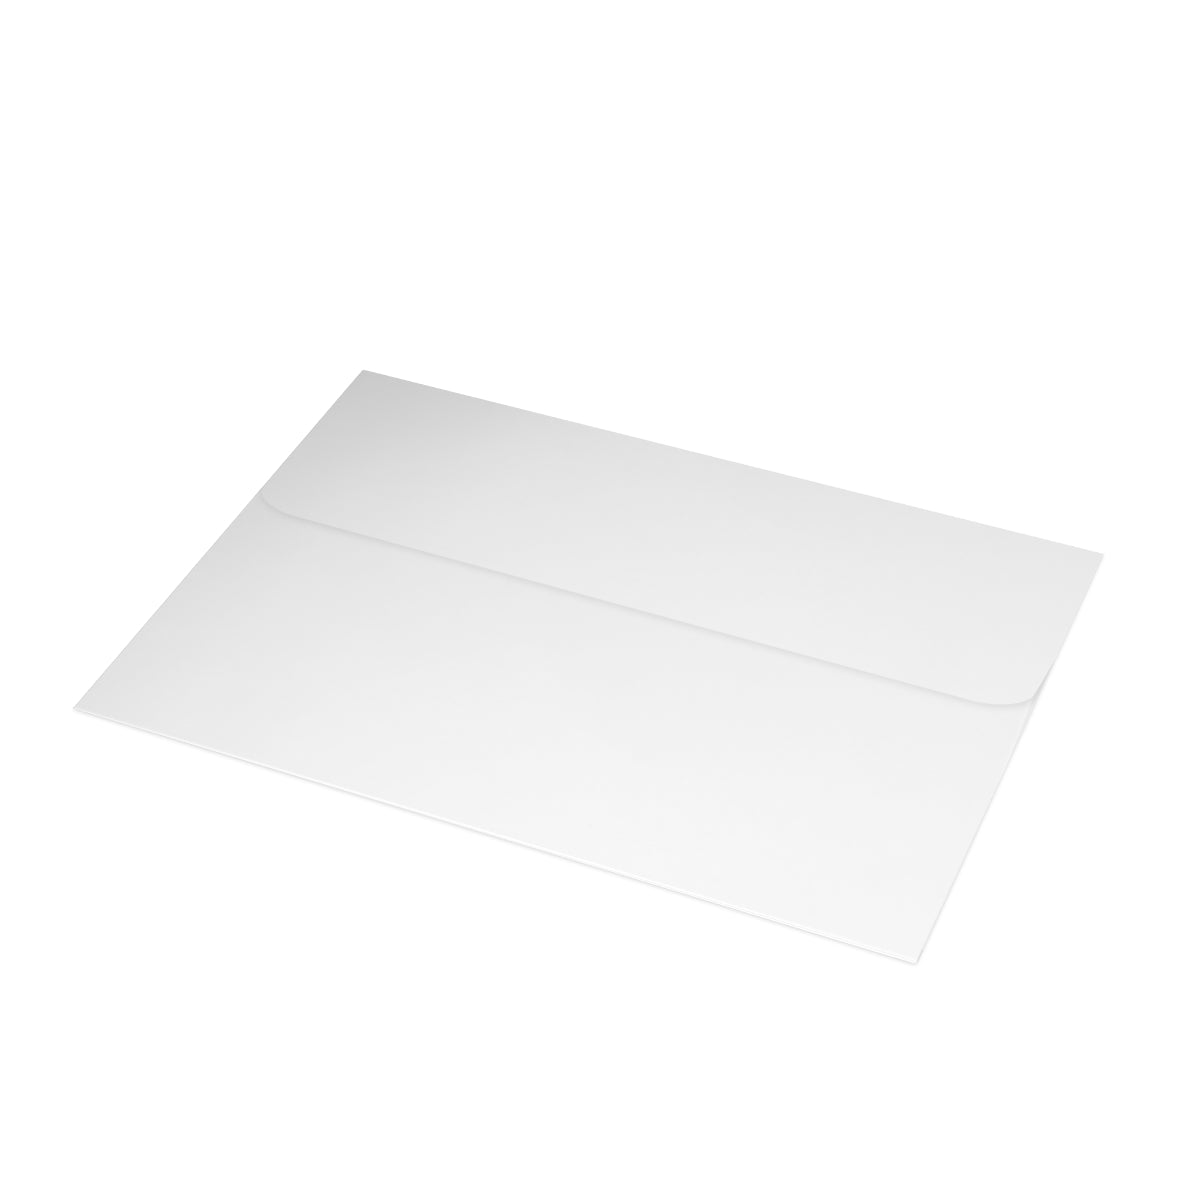 Cartes de notes mates pliées Sedona + enveloppes (10 pièces) 